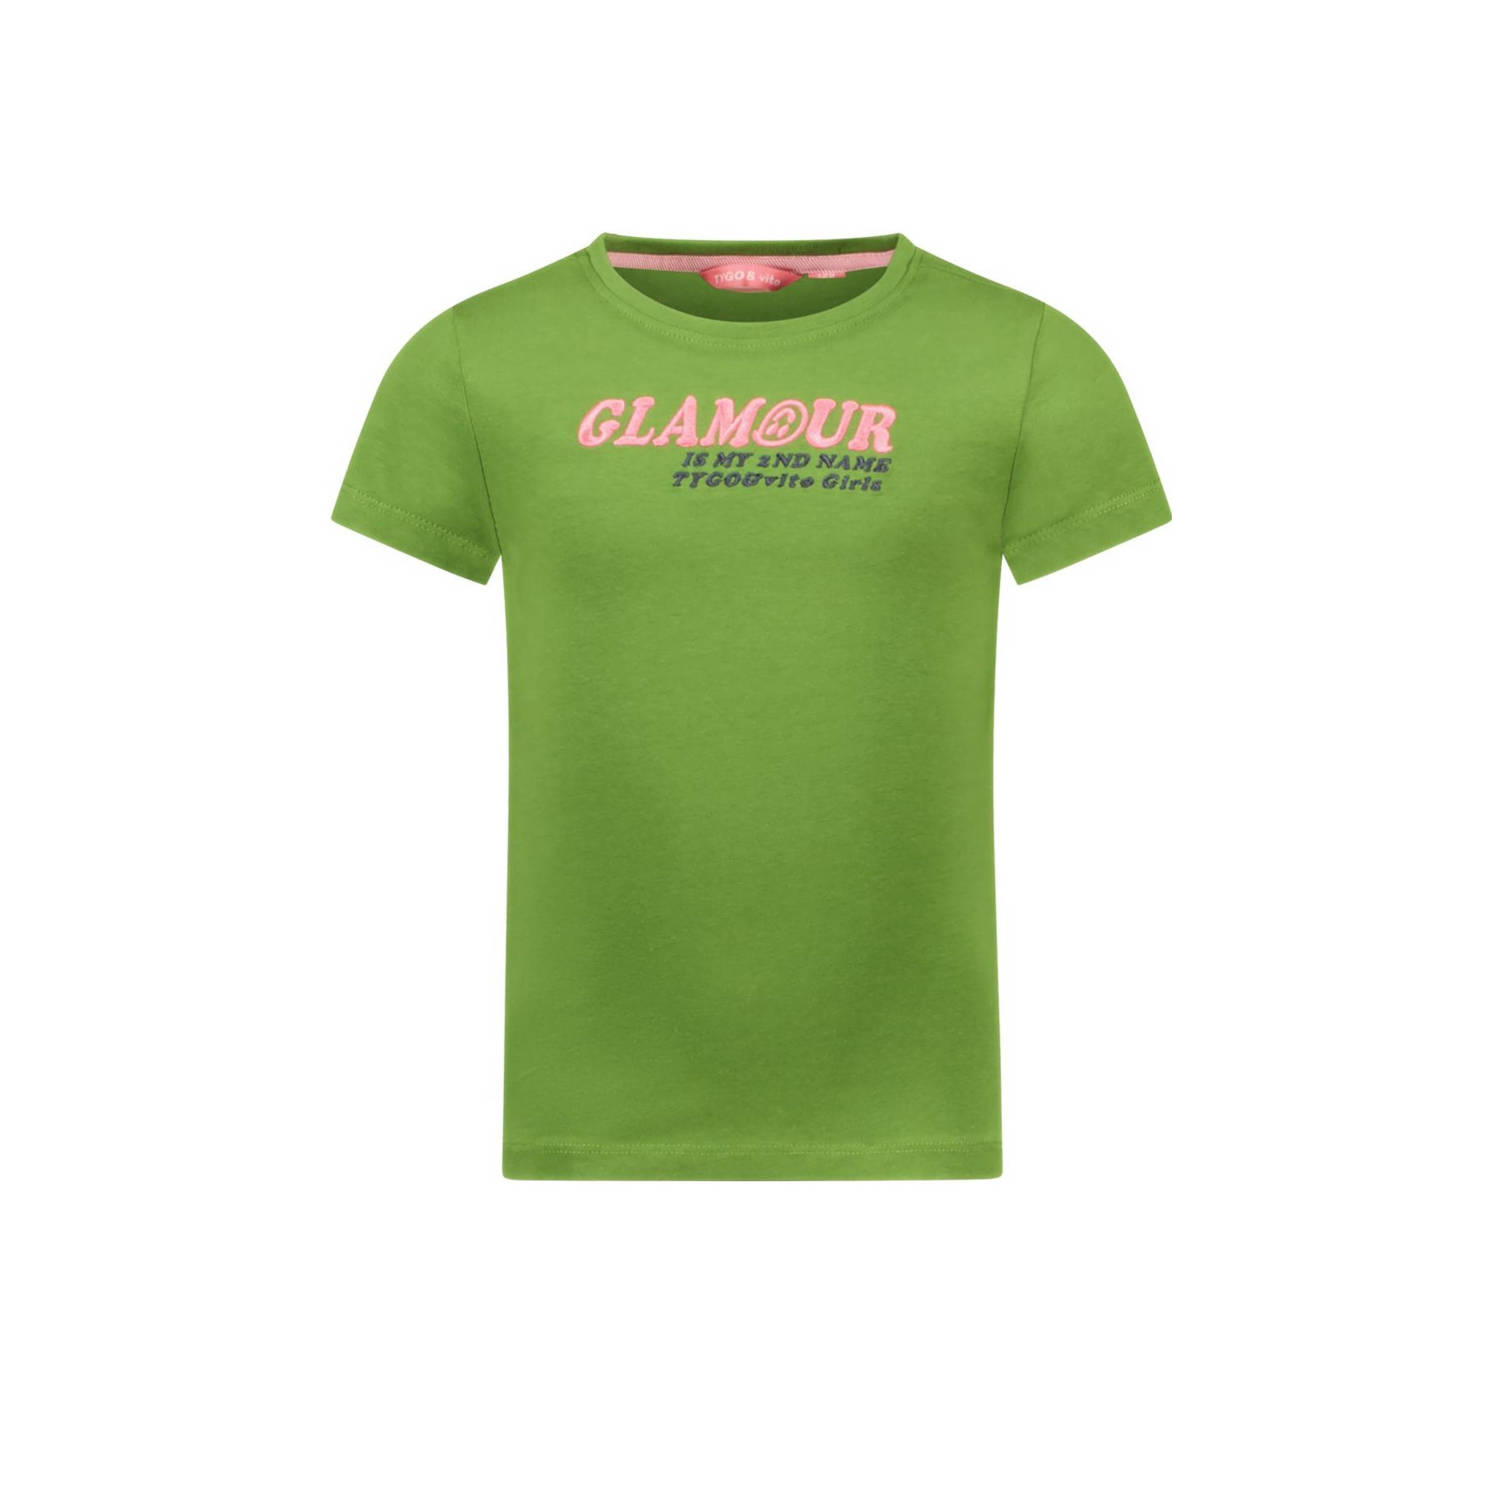 TYGO & vito T-shirt Jill met tekst en borduursels olijfgroen Meisjes Katoen Ronde hals 110 116